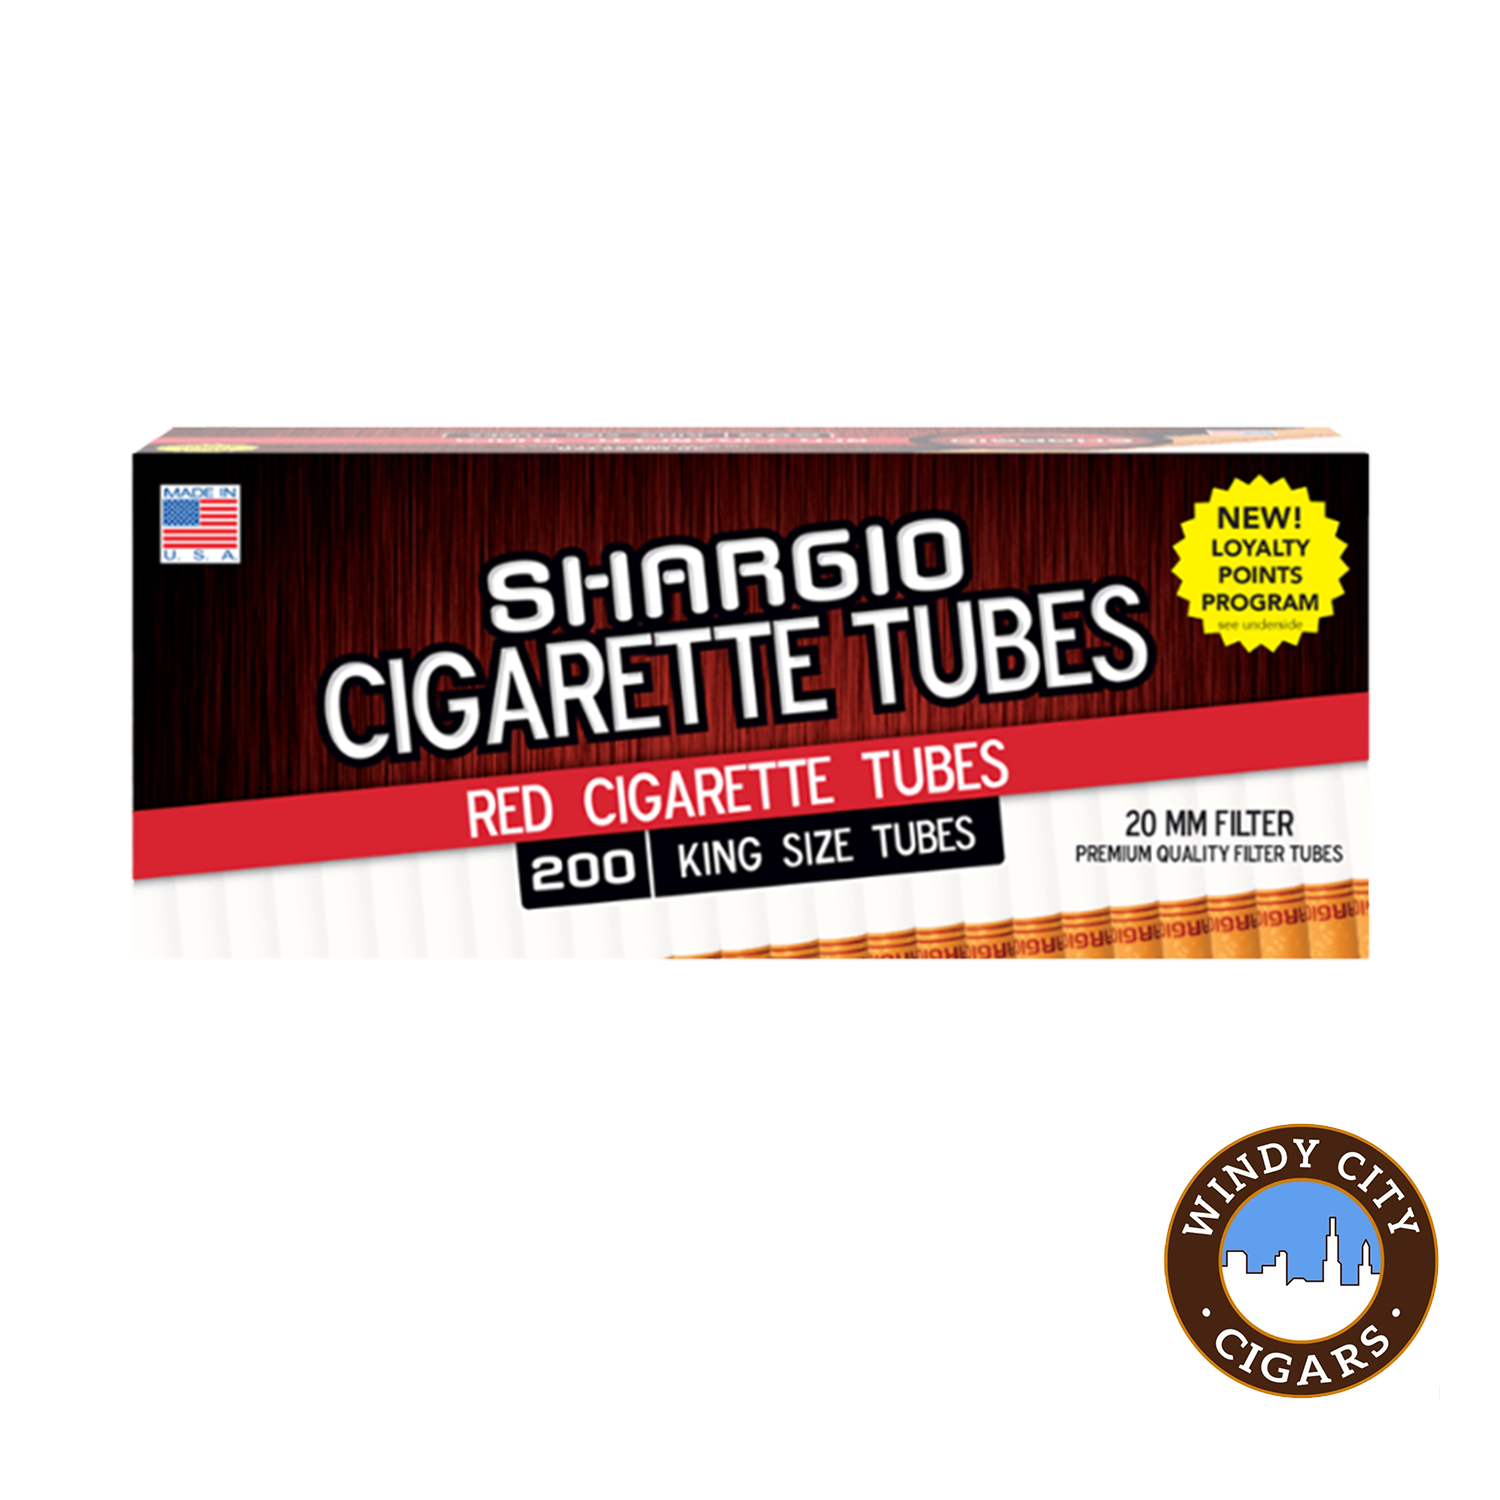 Buy Cigarette Tubes Online Distributor